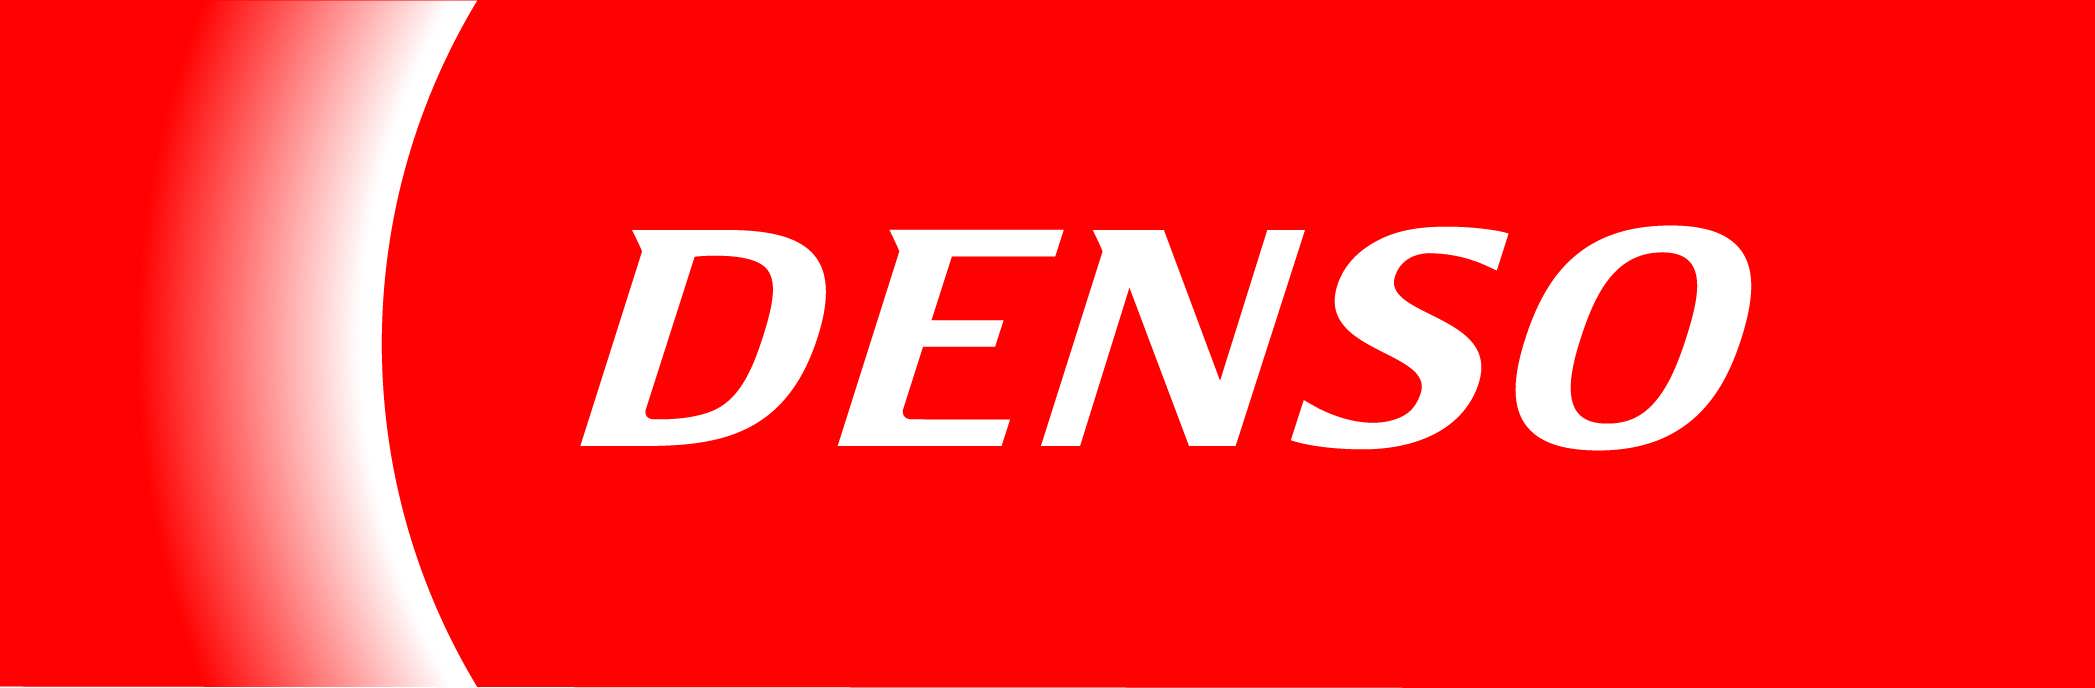 Denso Logo - Denso Logos